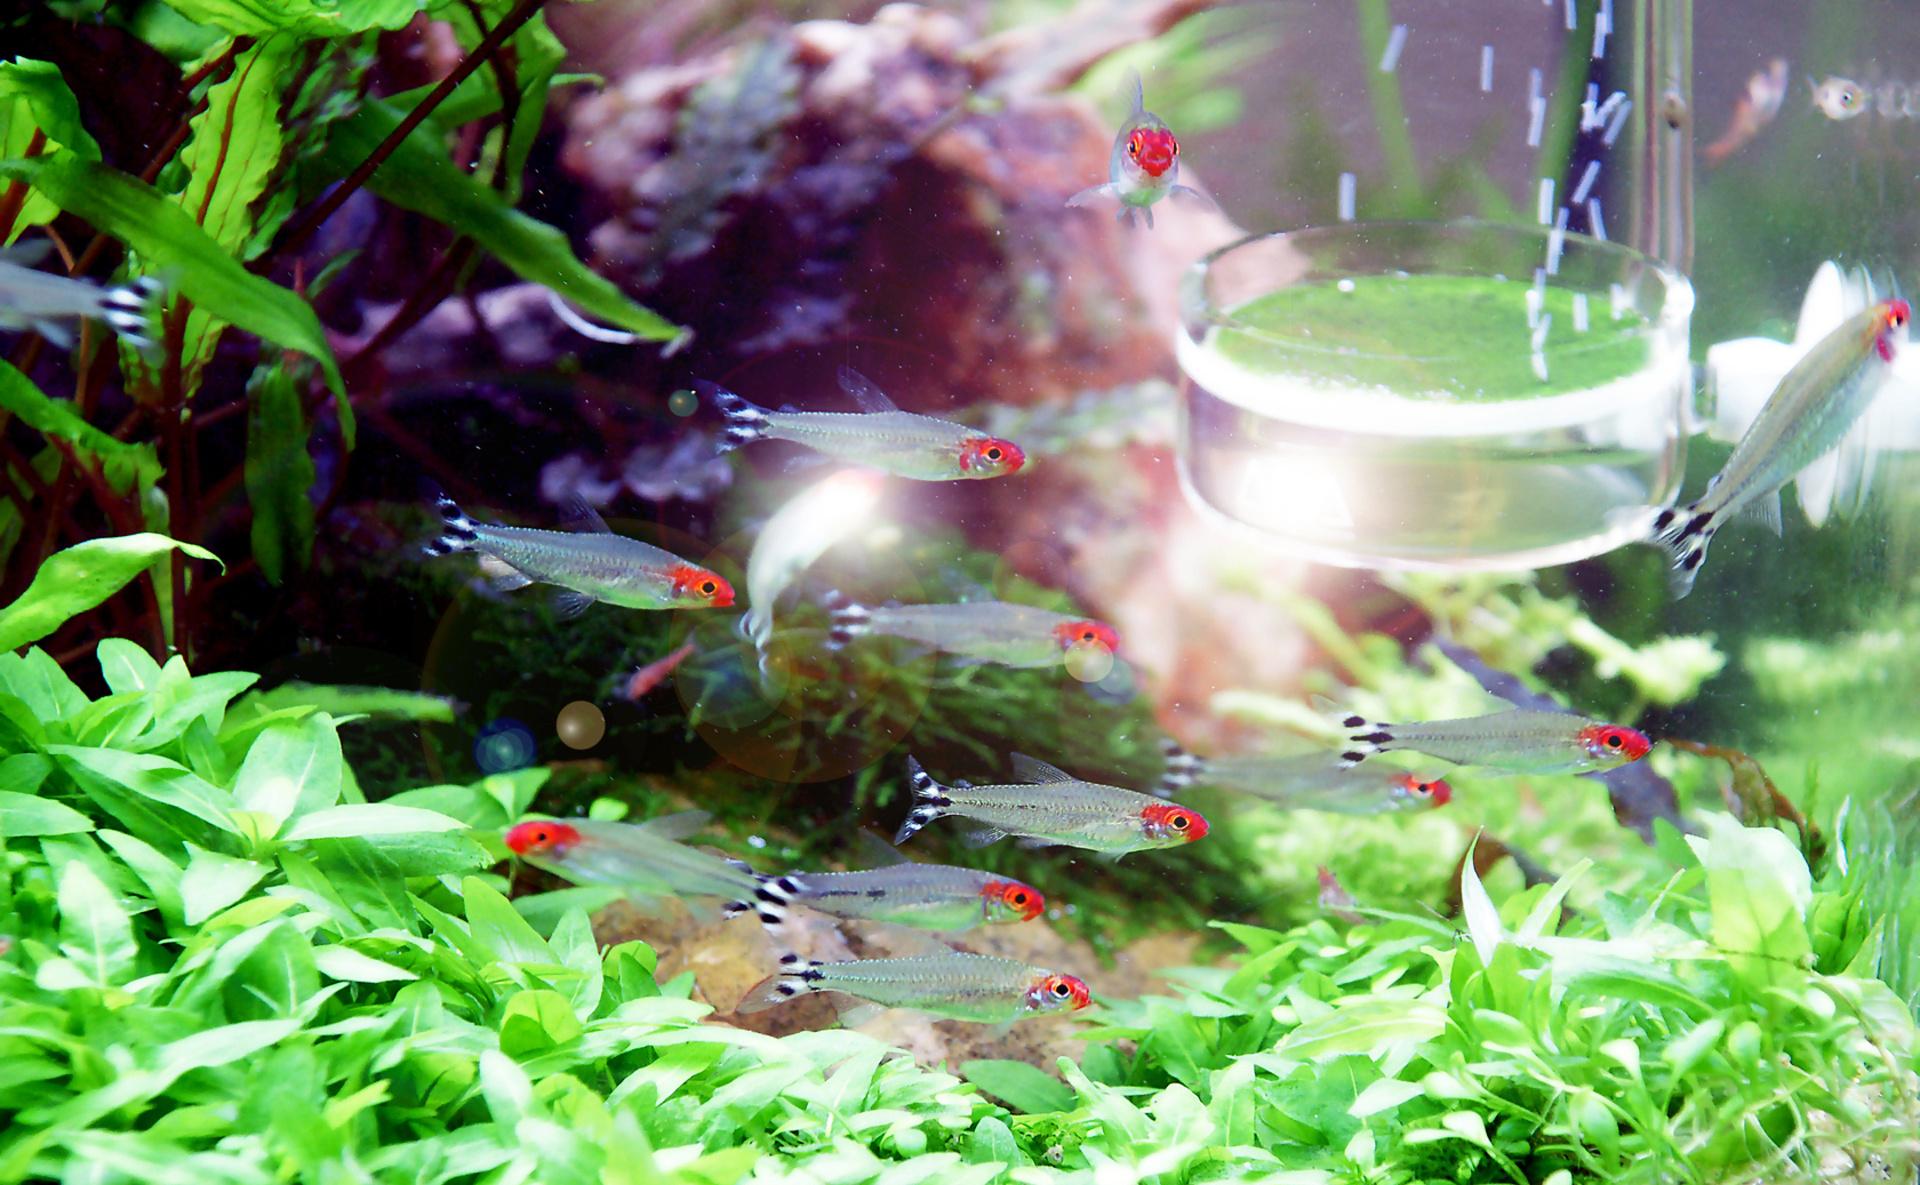 Aquarium decor with small fish